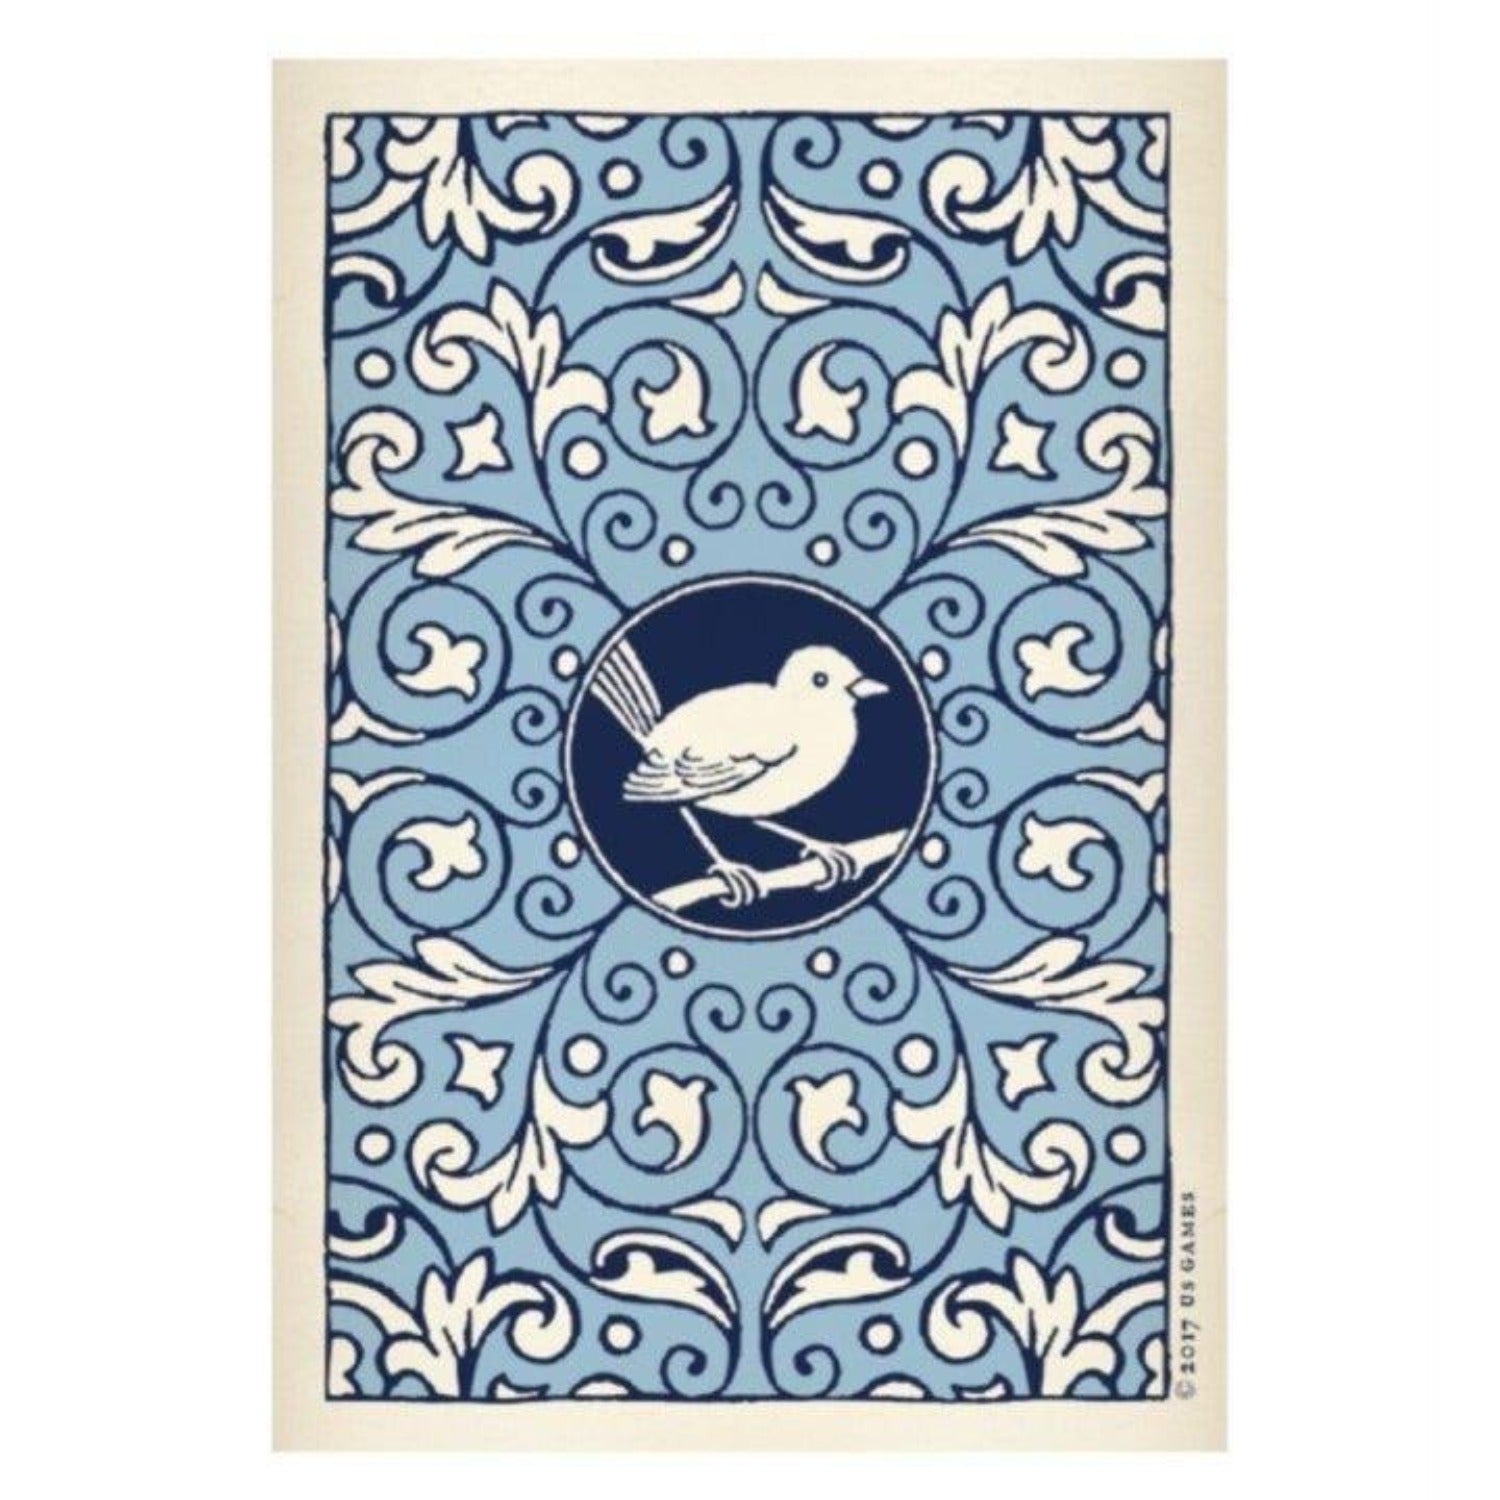 Blue Bird Lenormand Playing Card Deck